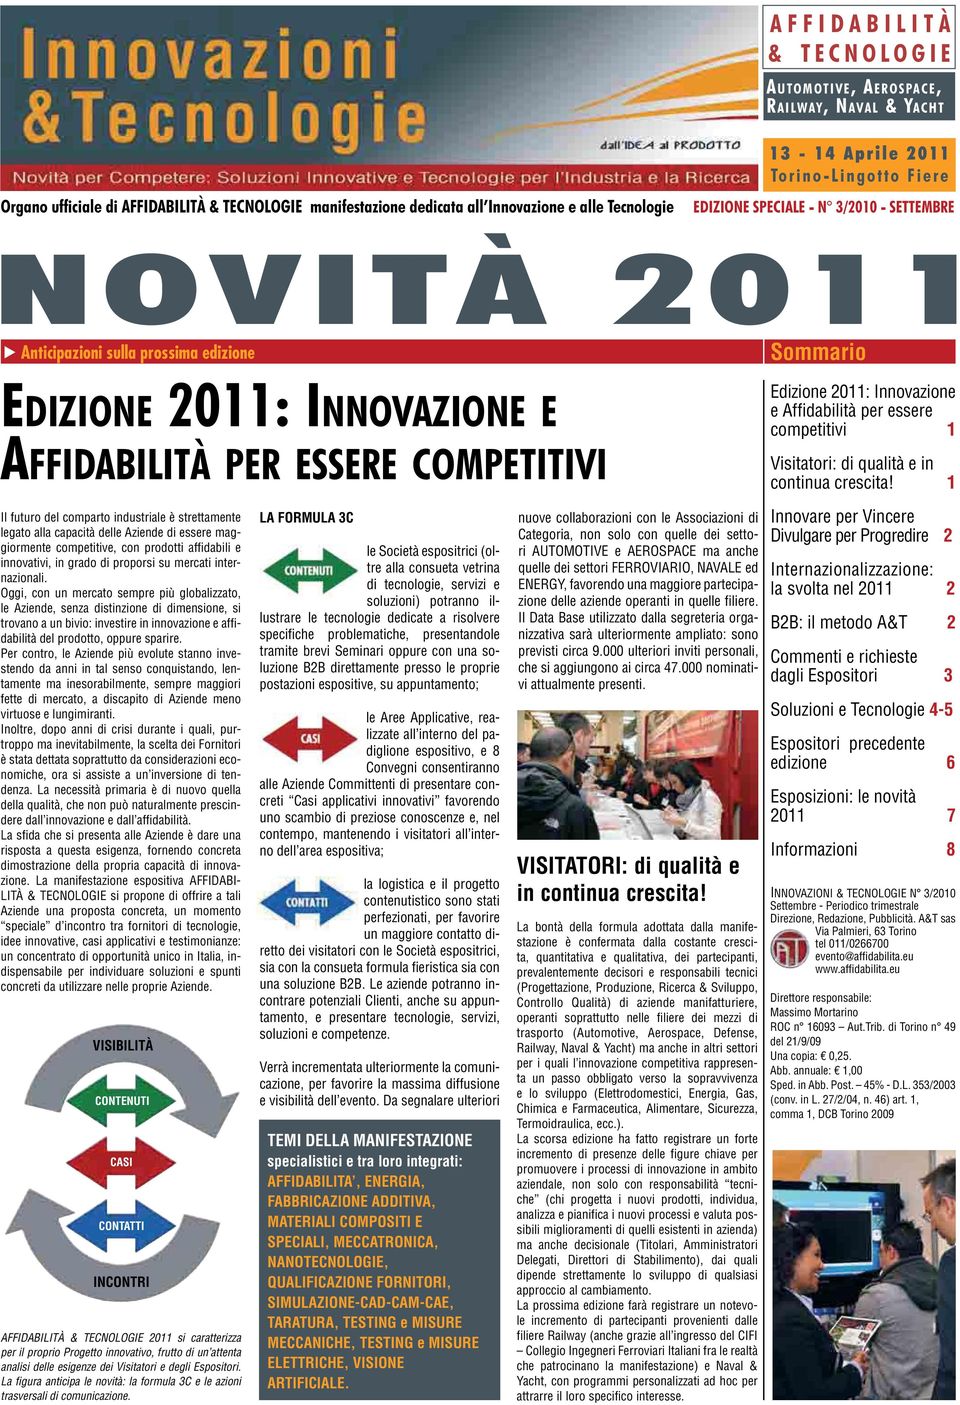 2011: Innovazione e Affidabilità per essere competitivi 1 Visitatori: di qualità e in continua crescita!